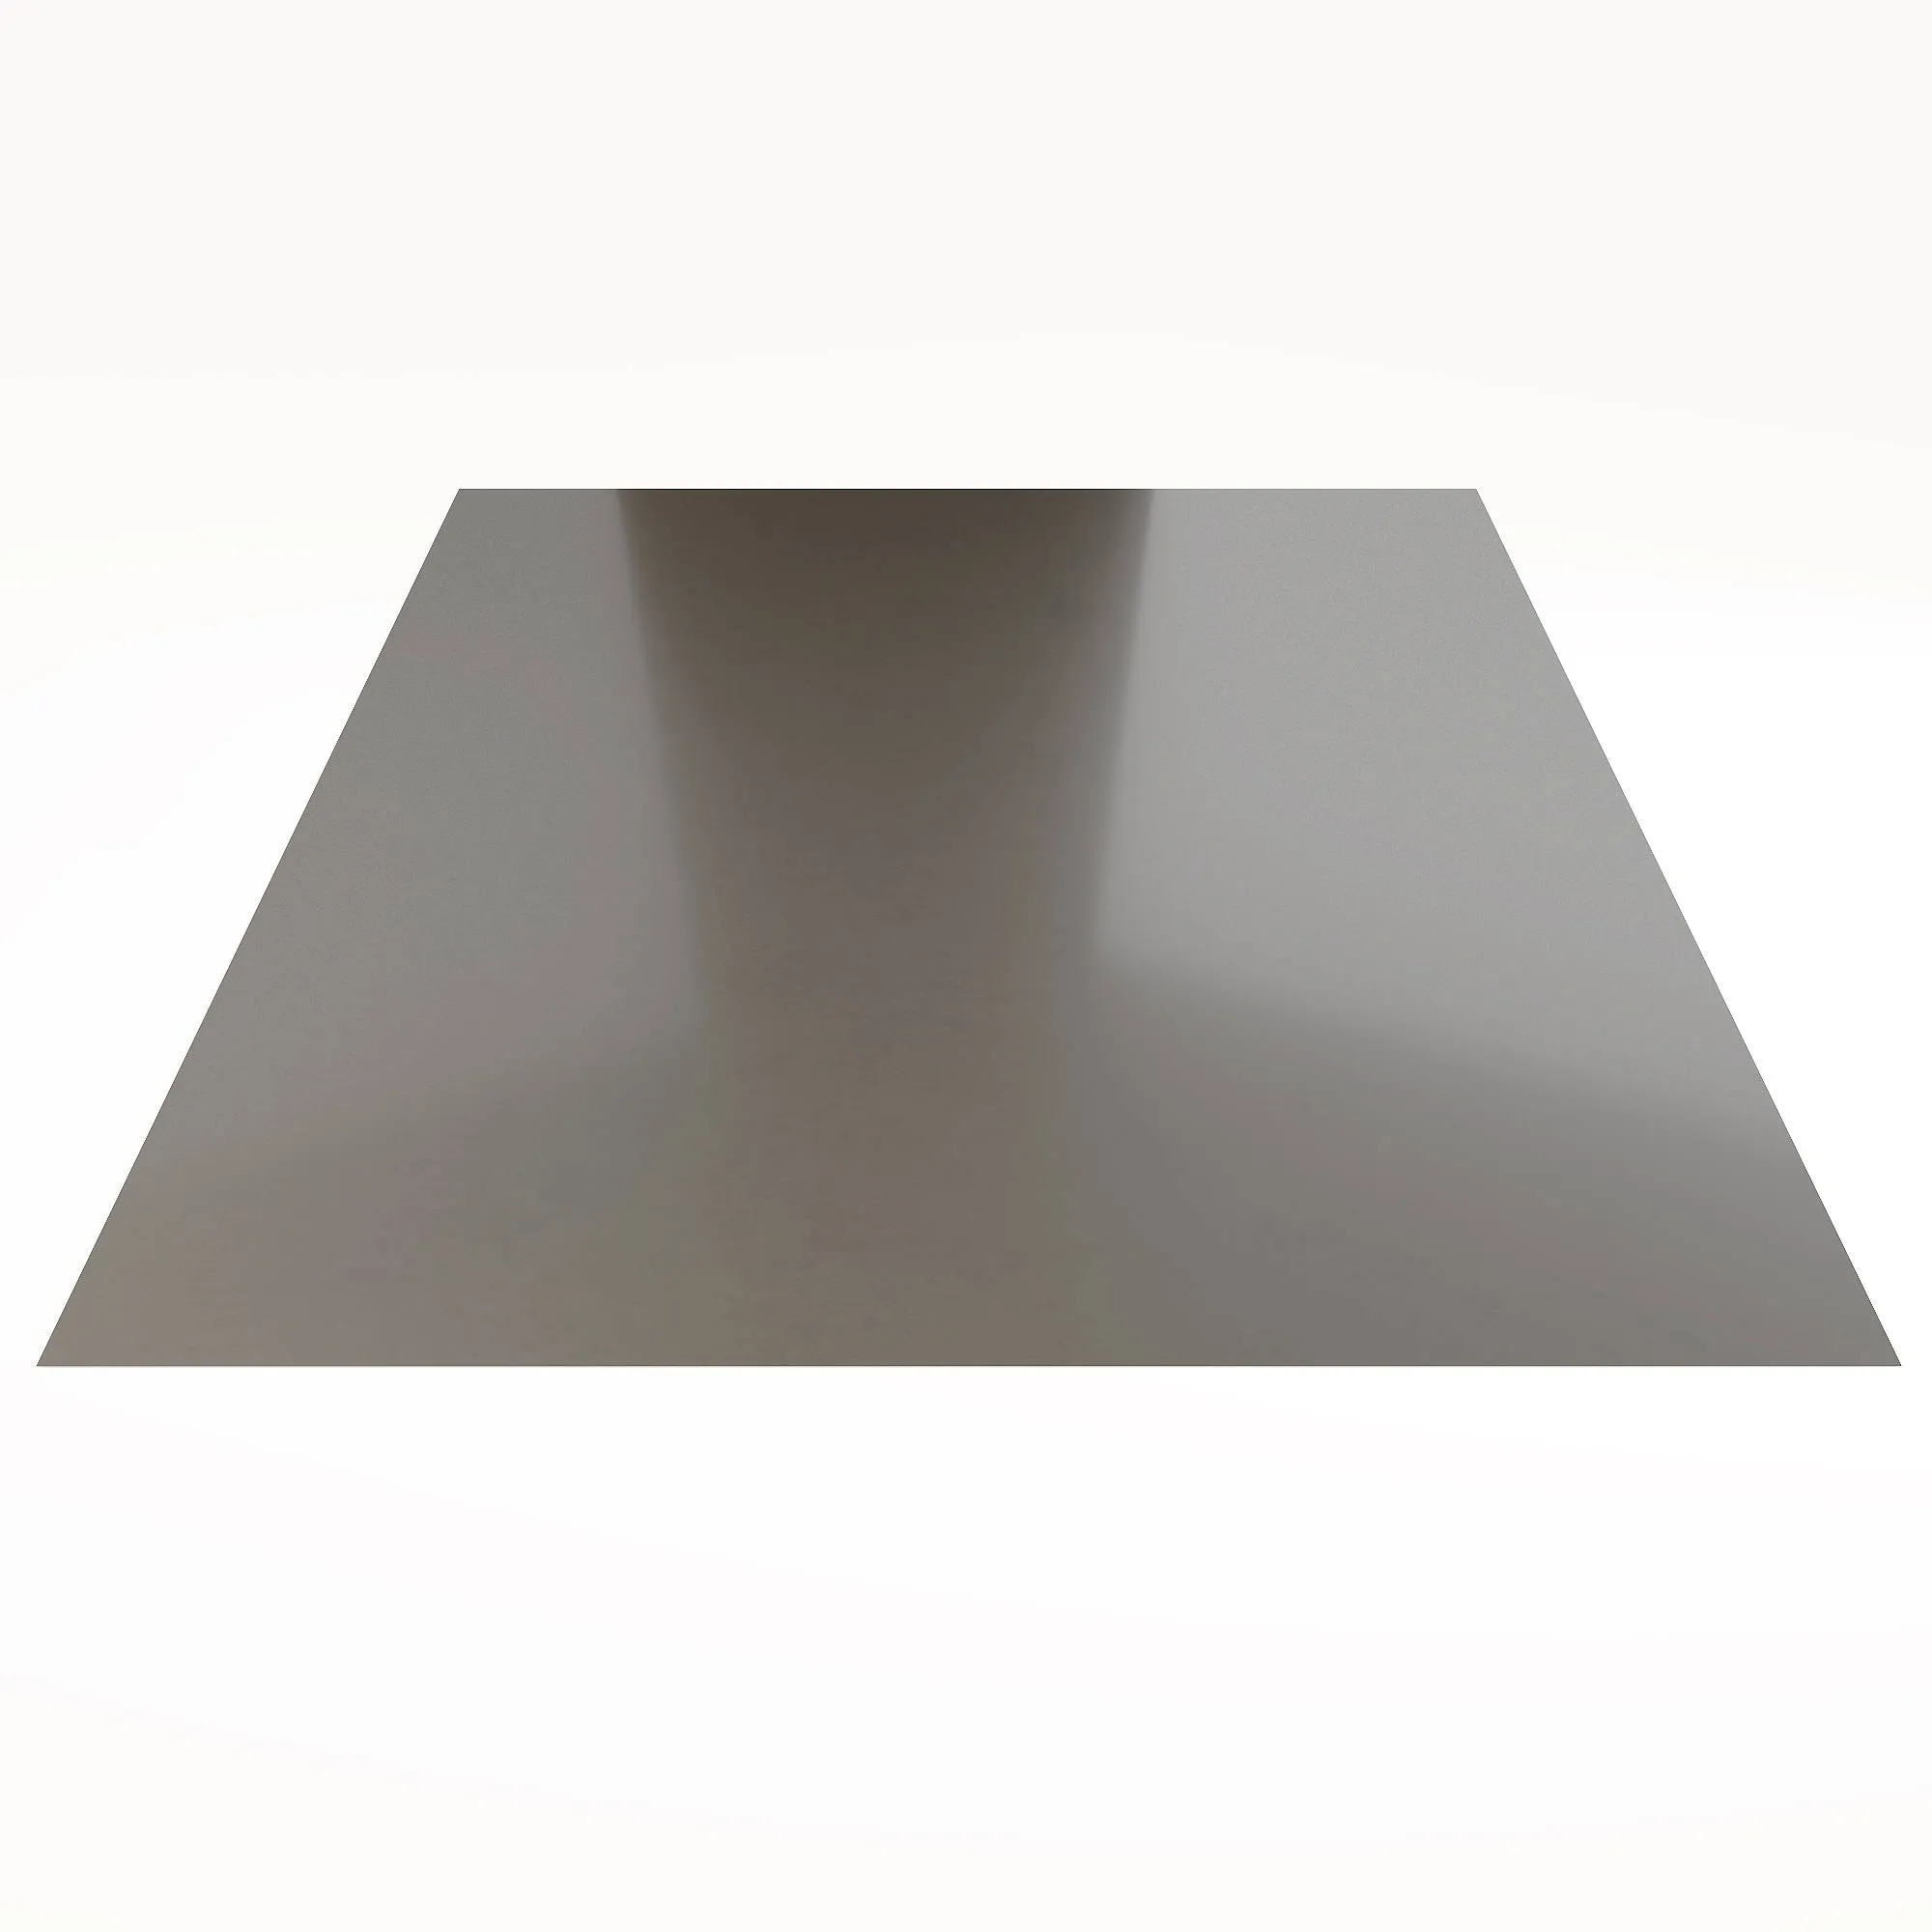 Гладкий лист Гладкий полиэстер RAL 7004 (Серый) 2500*1250*0,4 односторонний ламинированный